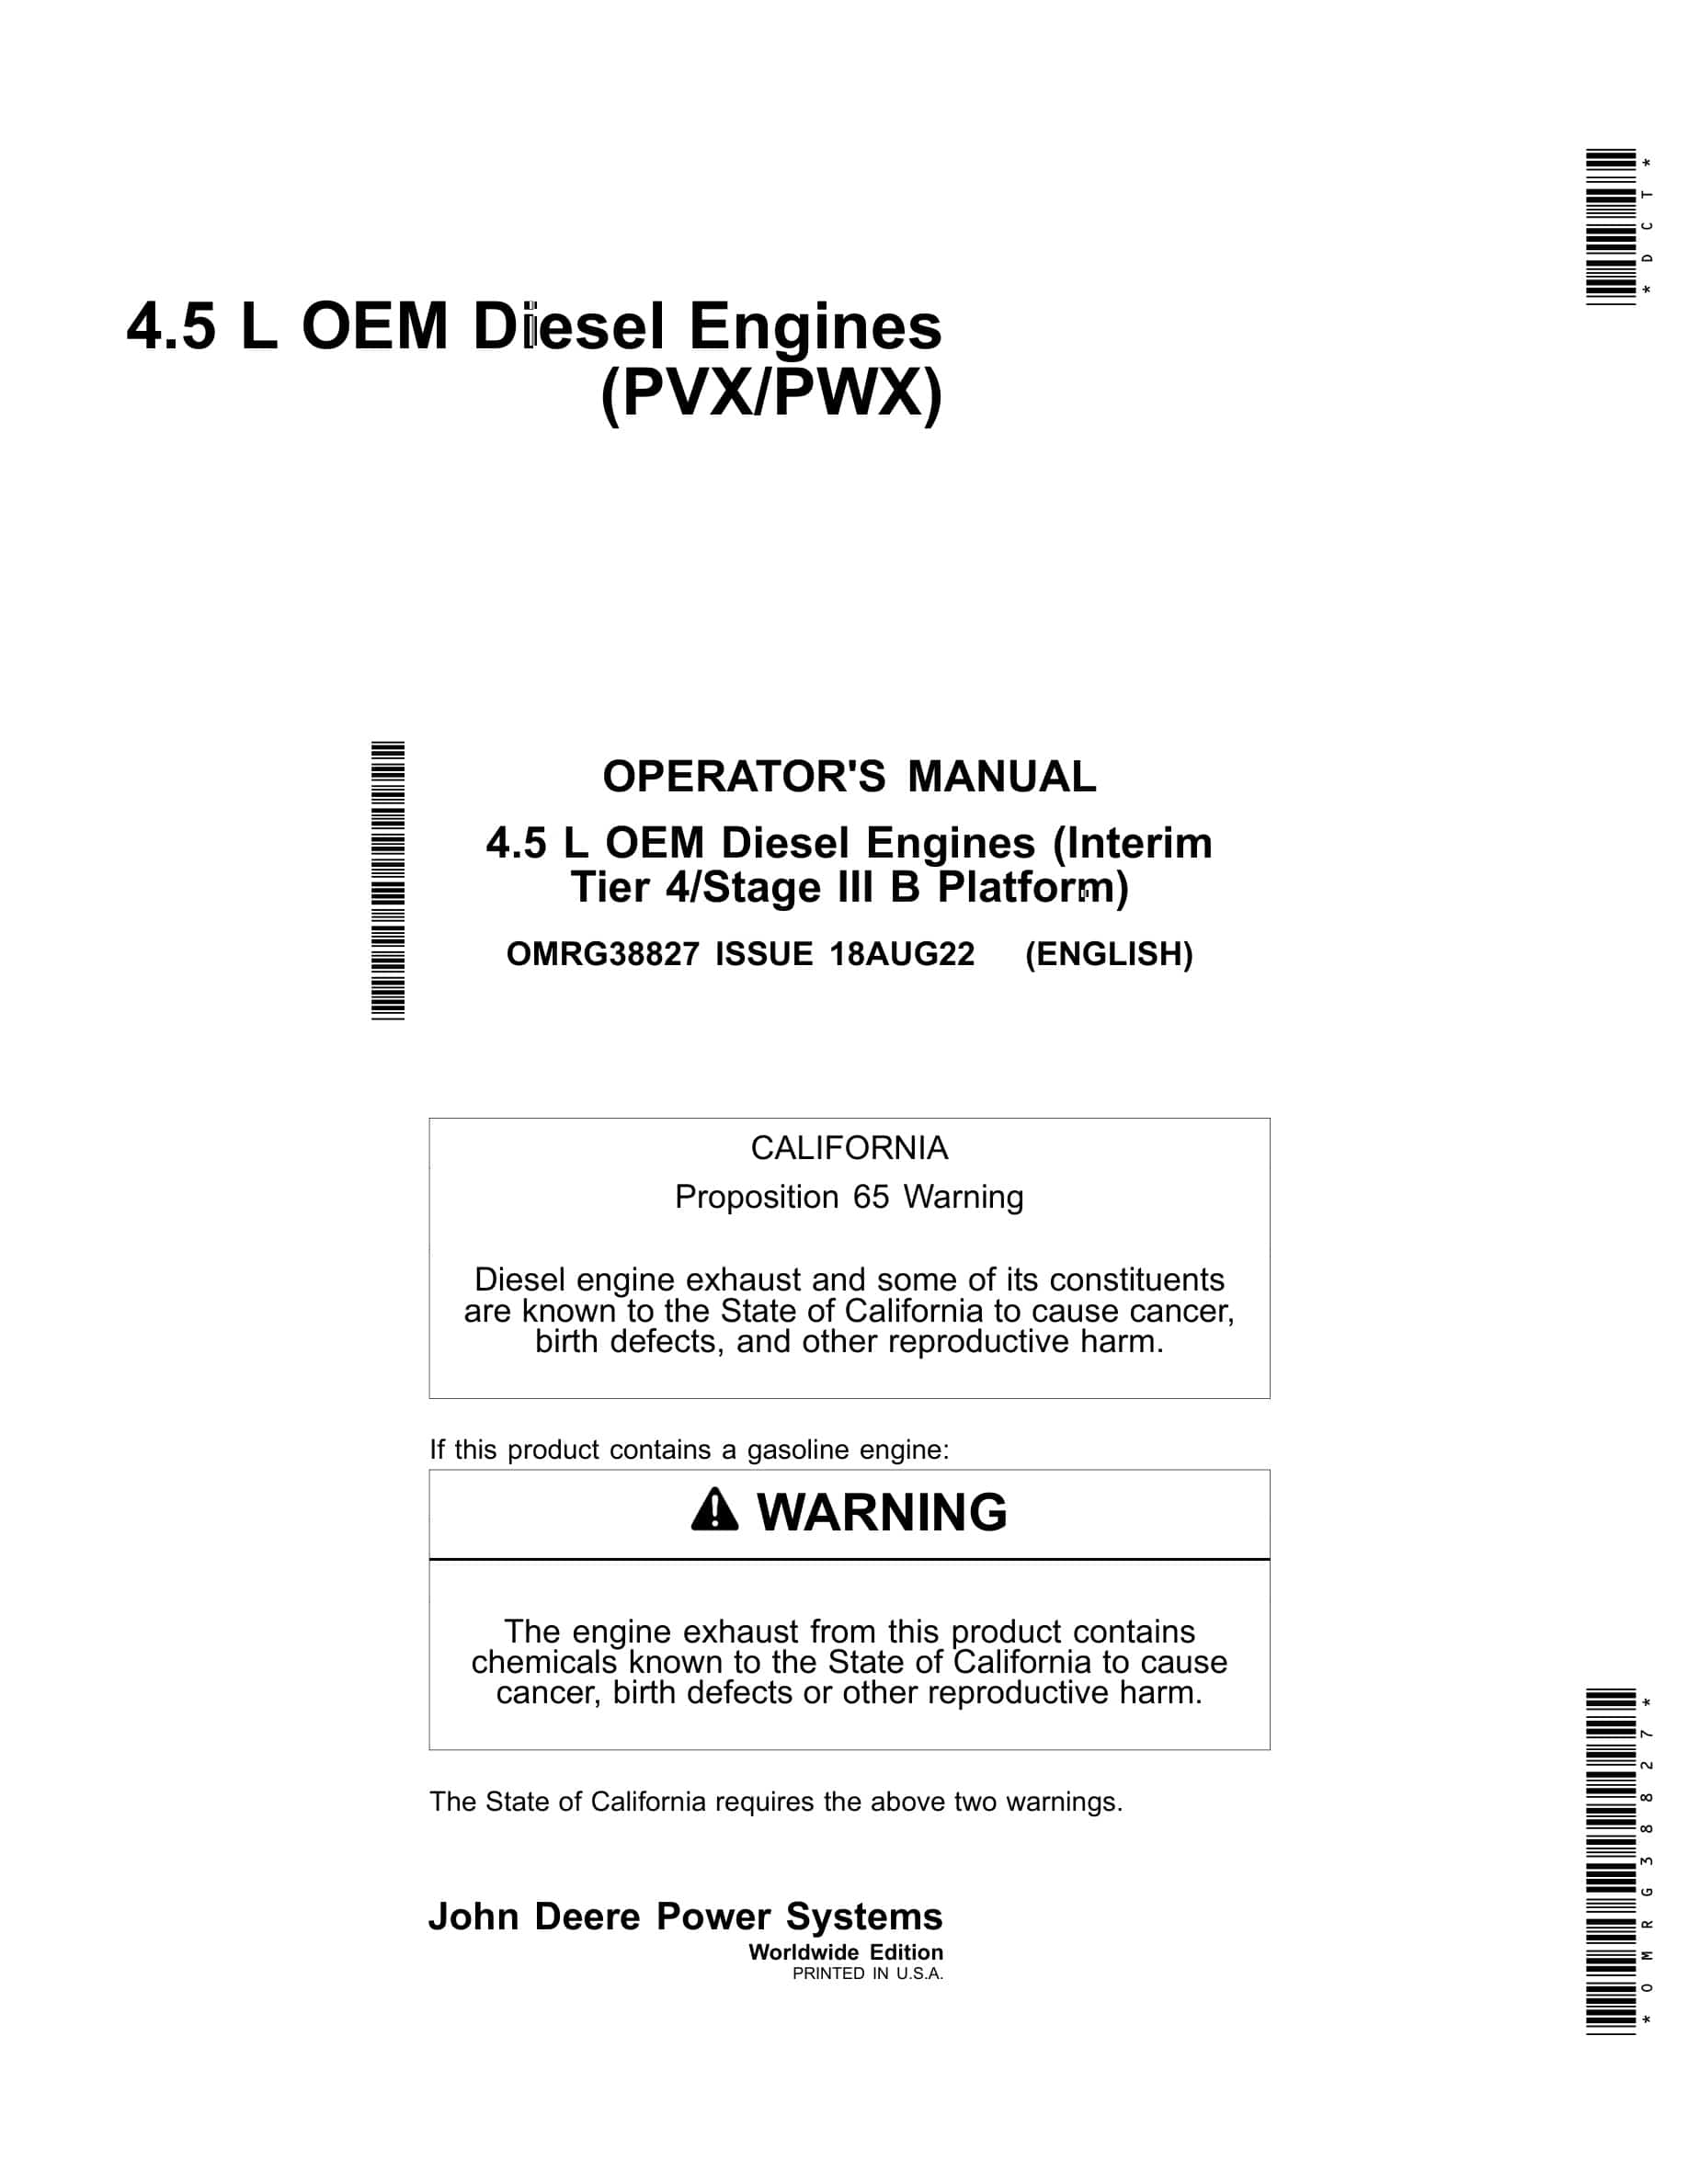 John Deere PowerTech 4.5 L OEM (Interim Tier 4 Stage III B Platform) Diesel Engines Operator Manual OMRG38827-1